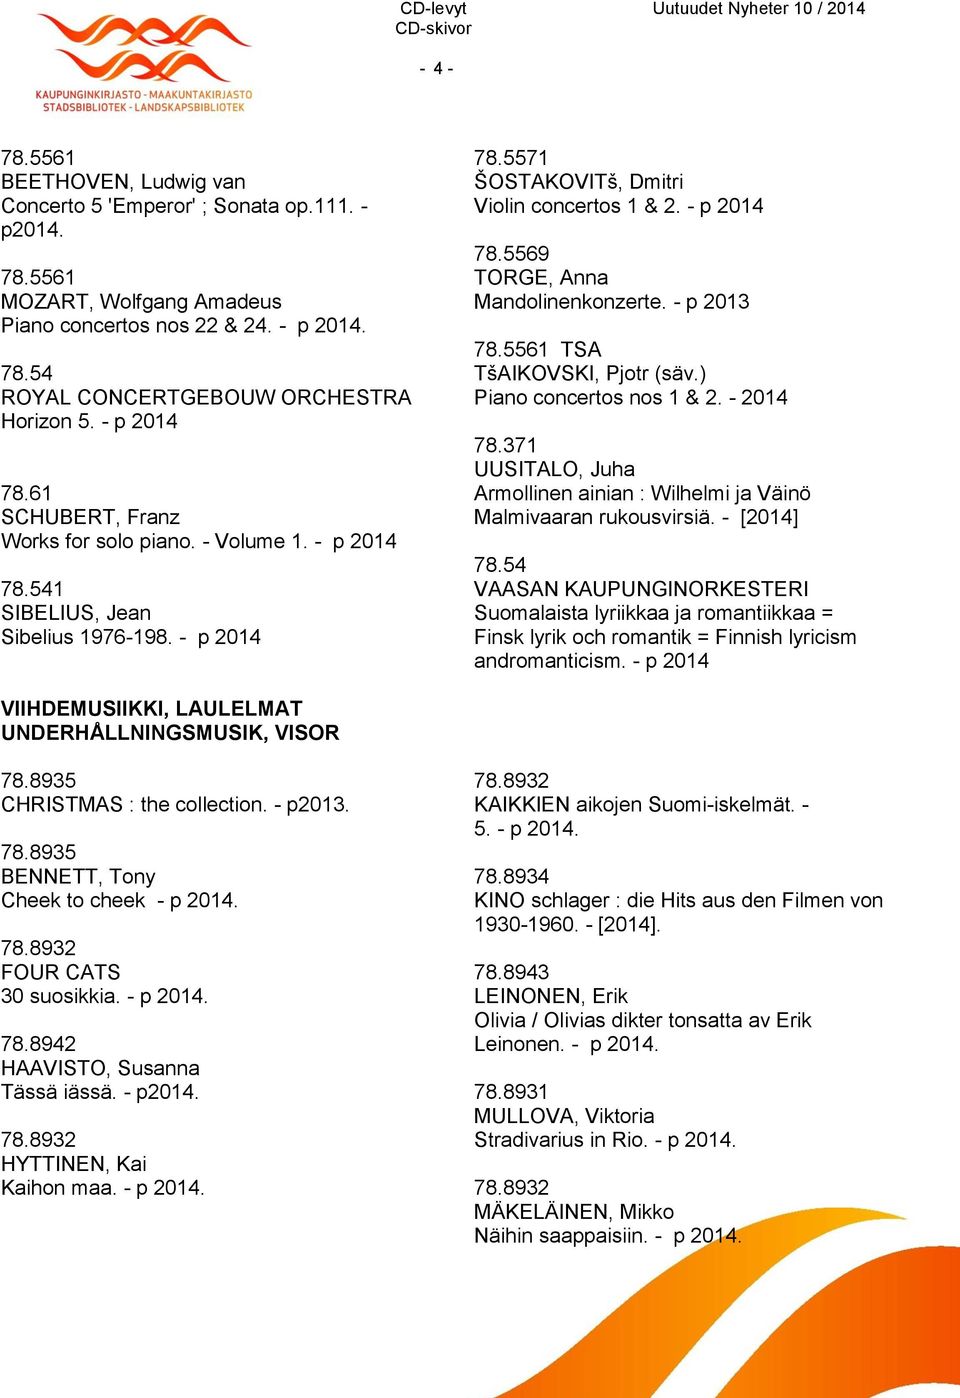 - p 2013 78.5561 TSA TšAIKOVSKI, Pjotr (säv.) Piano concertos nos 1 & 2. - 2014 78.371 UUSITALO, Juha Armollinen ainian : Wilhelmi ja Väinö Malmivaaran rukousvirsiä. - [2014] 78.